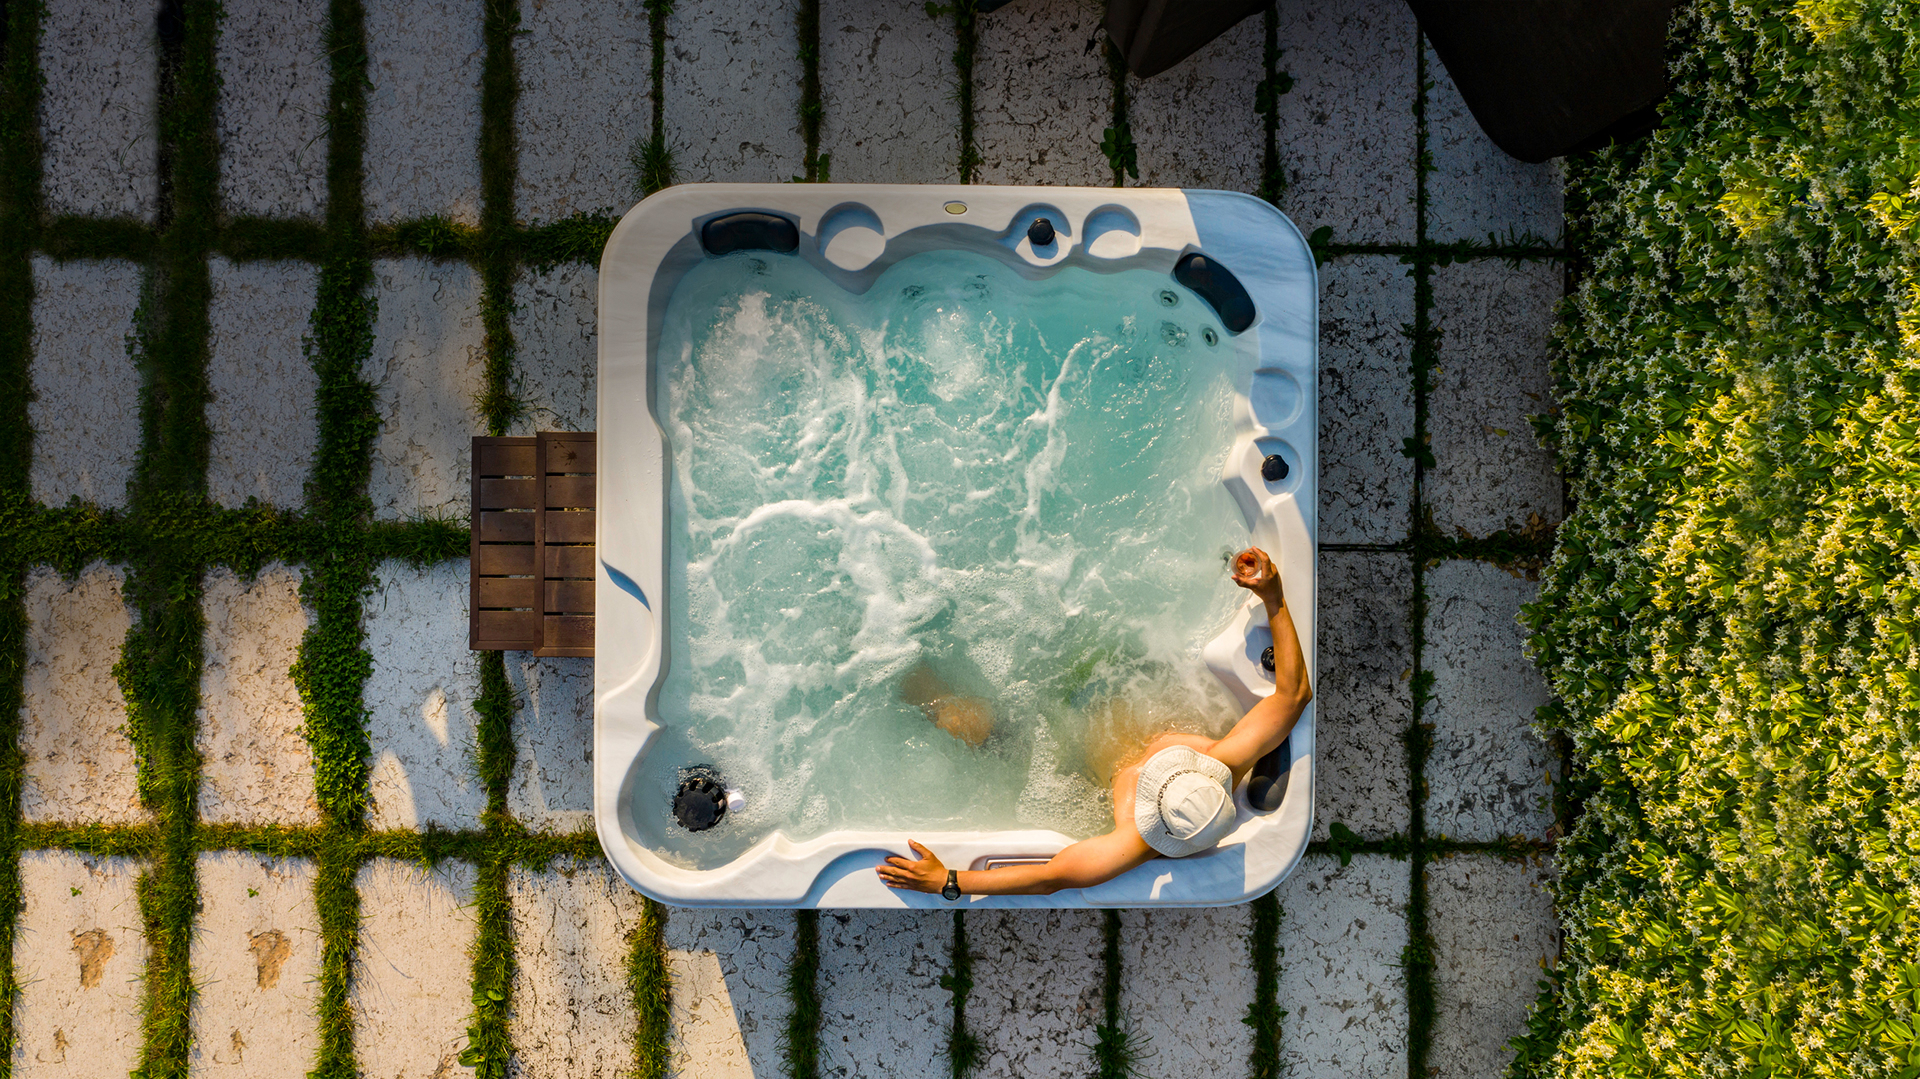 Man sitting inside an outdoor whirlpool